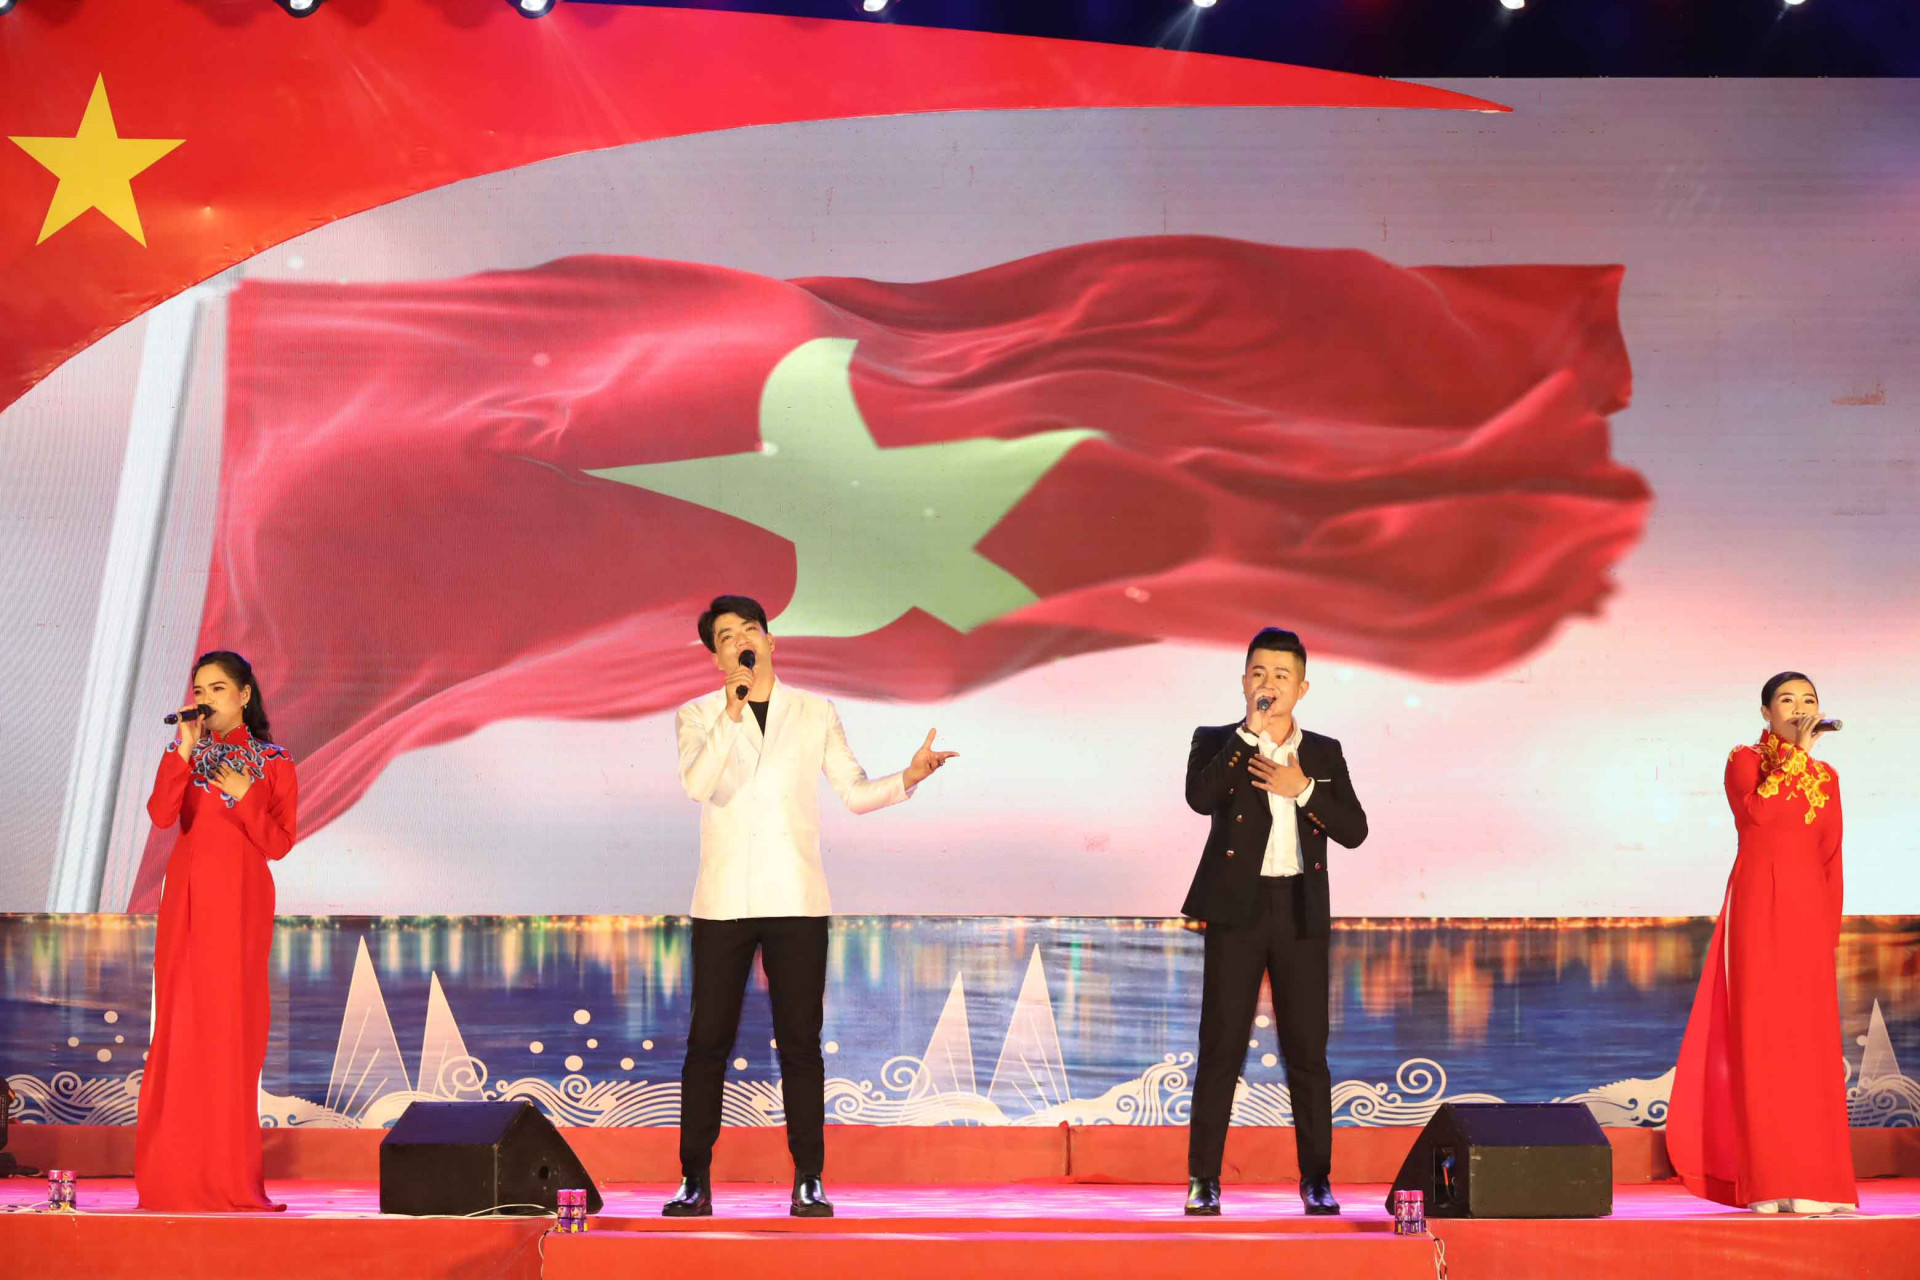 Tình yêu đất nước, niềm tự hào về màu cờ Tổ quốc của thể hệ trẻ hôm nay, được tác giả Tạ Quang Thắng thể hiện rất chân thành, khéo léo qua ca khúc Lá cờ. 